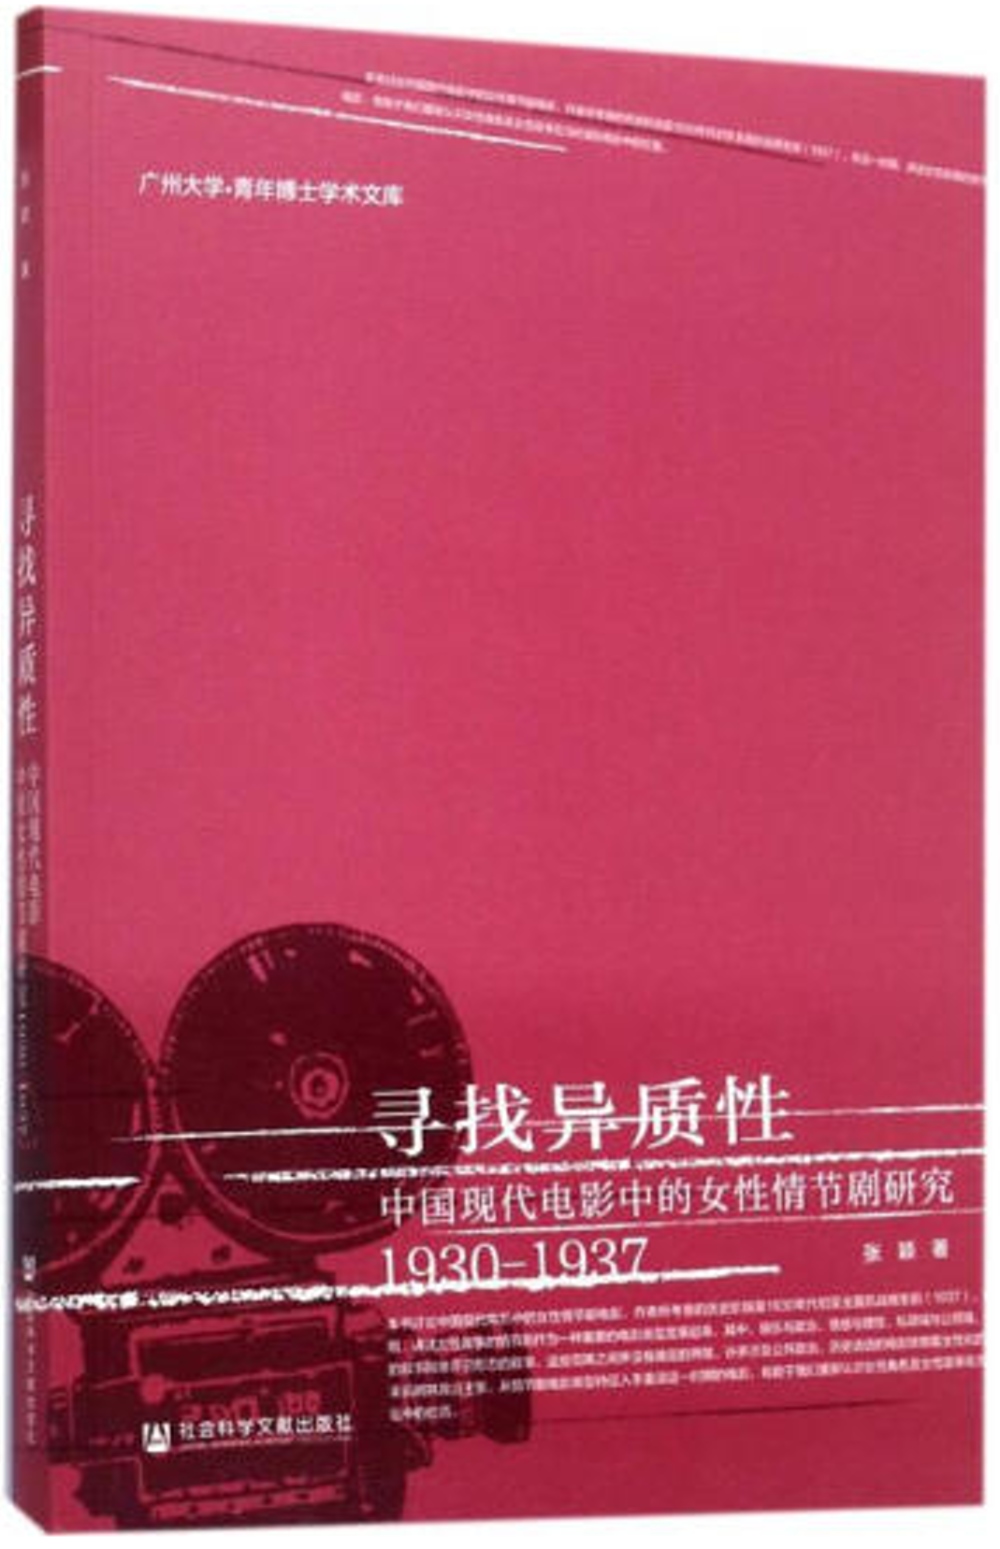 尋找異質性：中國現代電影中的女性情節劇研究（1930-1937）